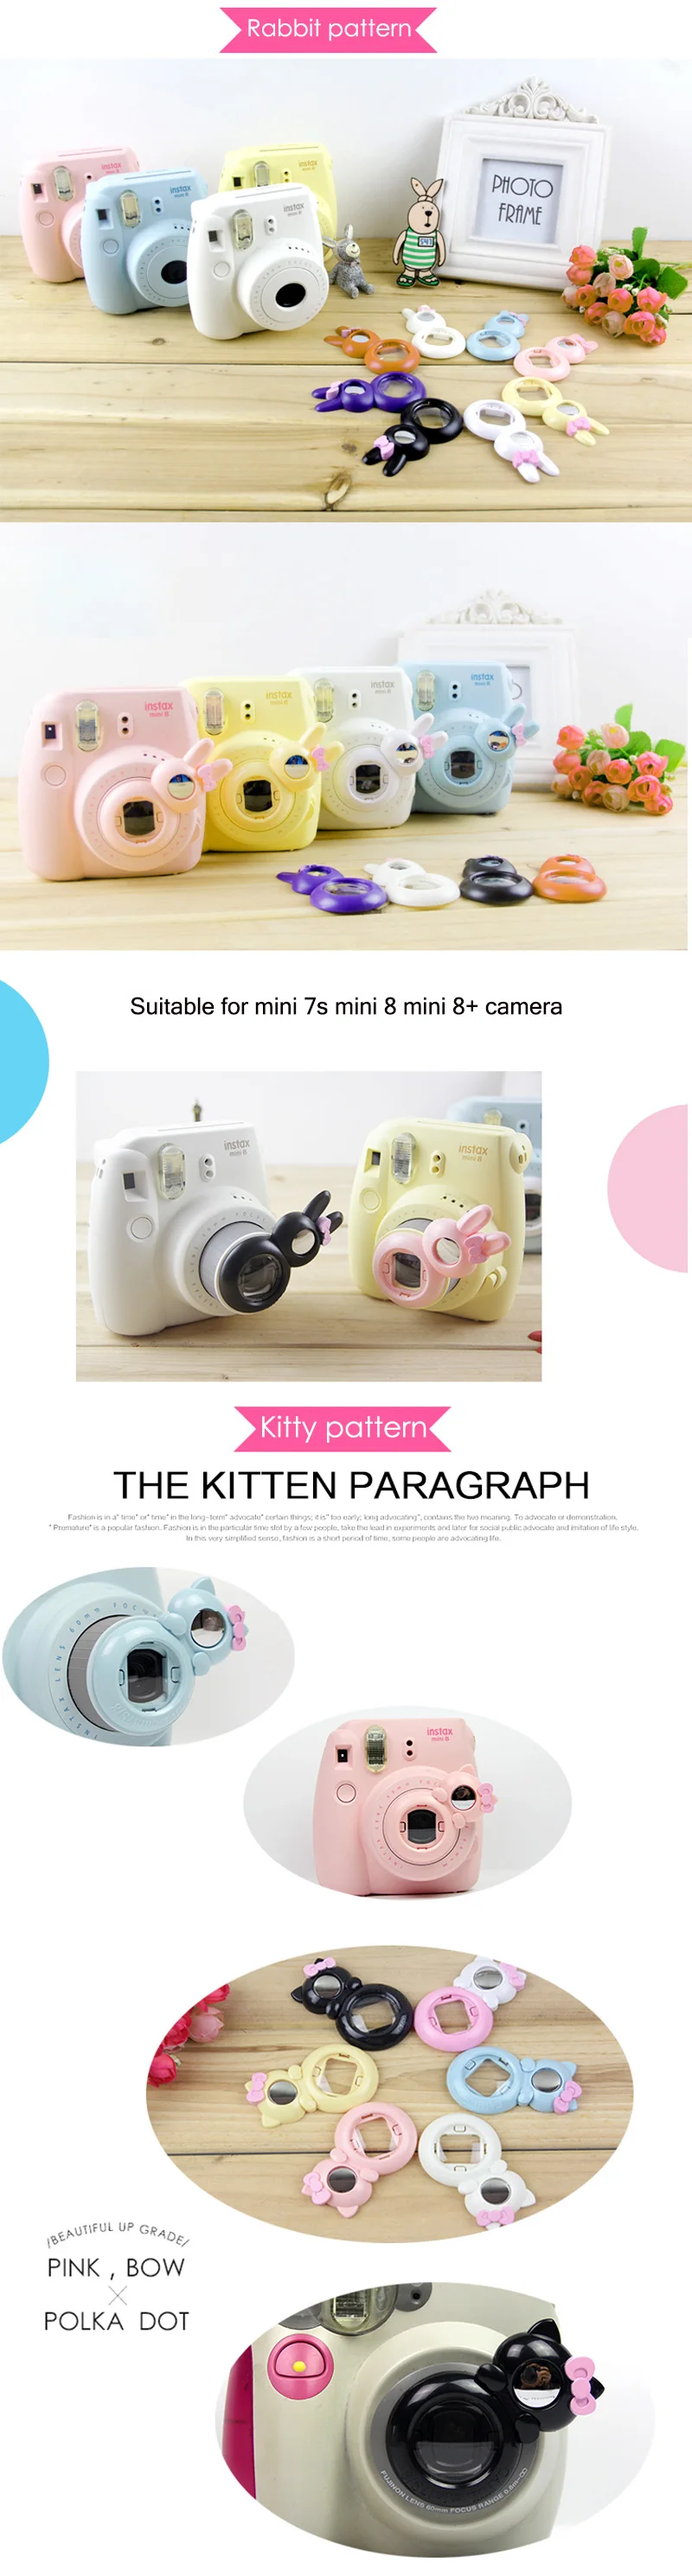 3 шт./партия, милый рисунок «Hello kitty» с кроликом для камеры Fujifilm Instax Mini 7s 8, зеркало для съемки селфи разных цветов